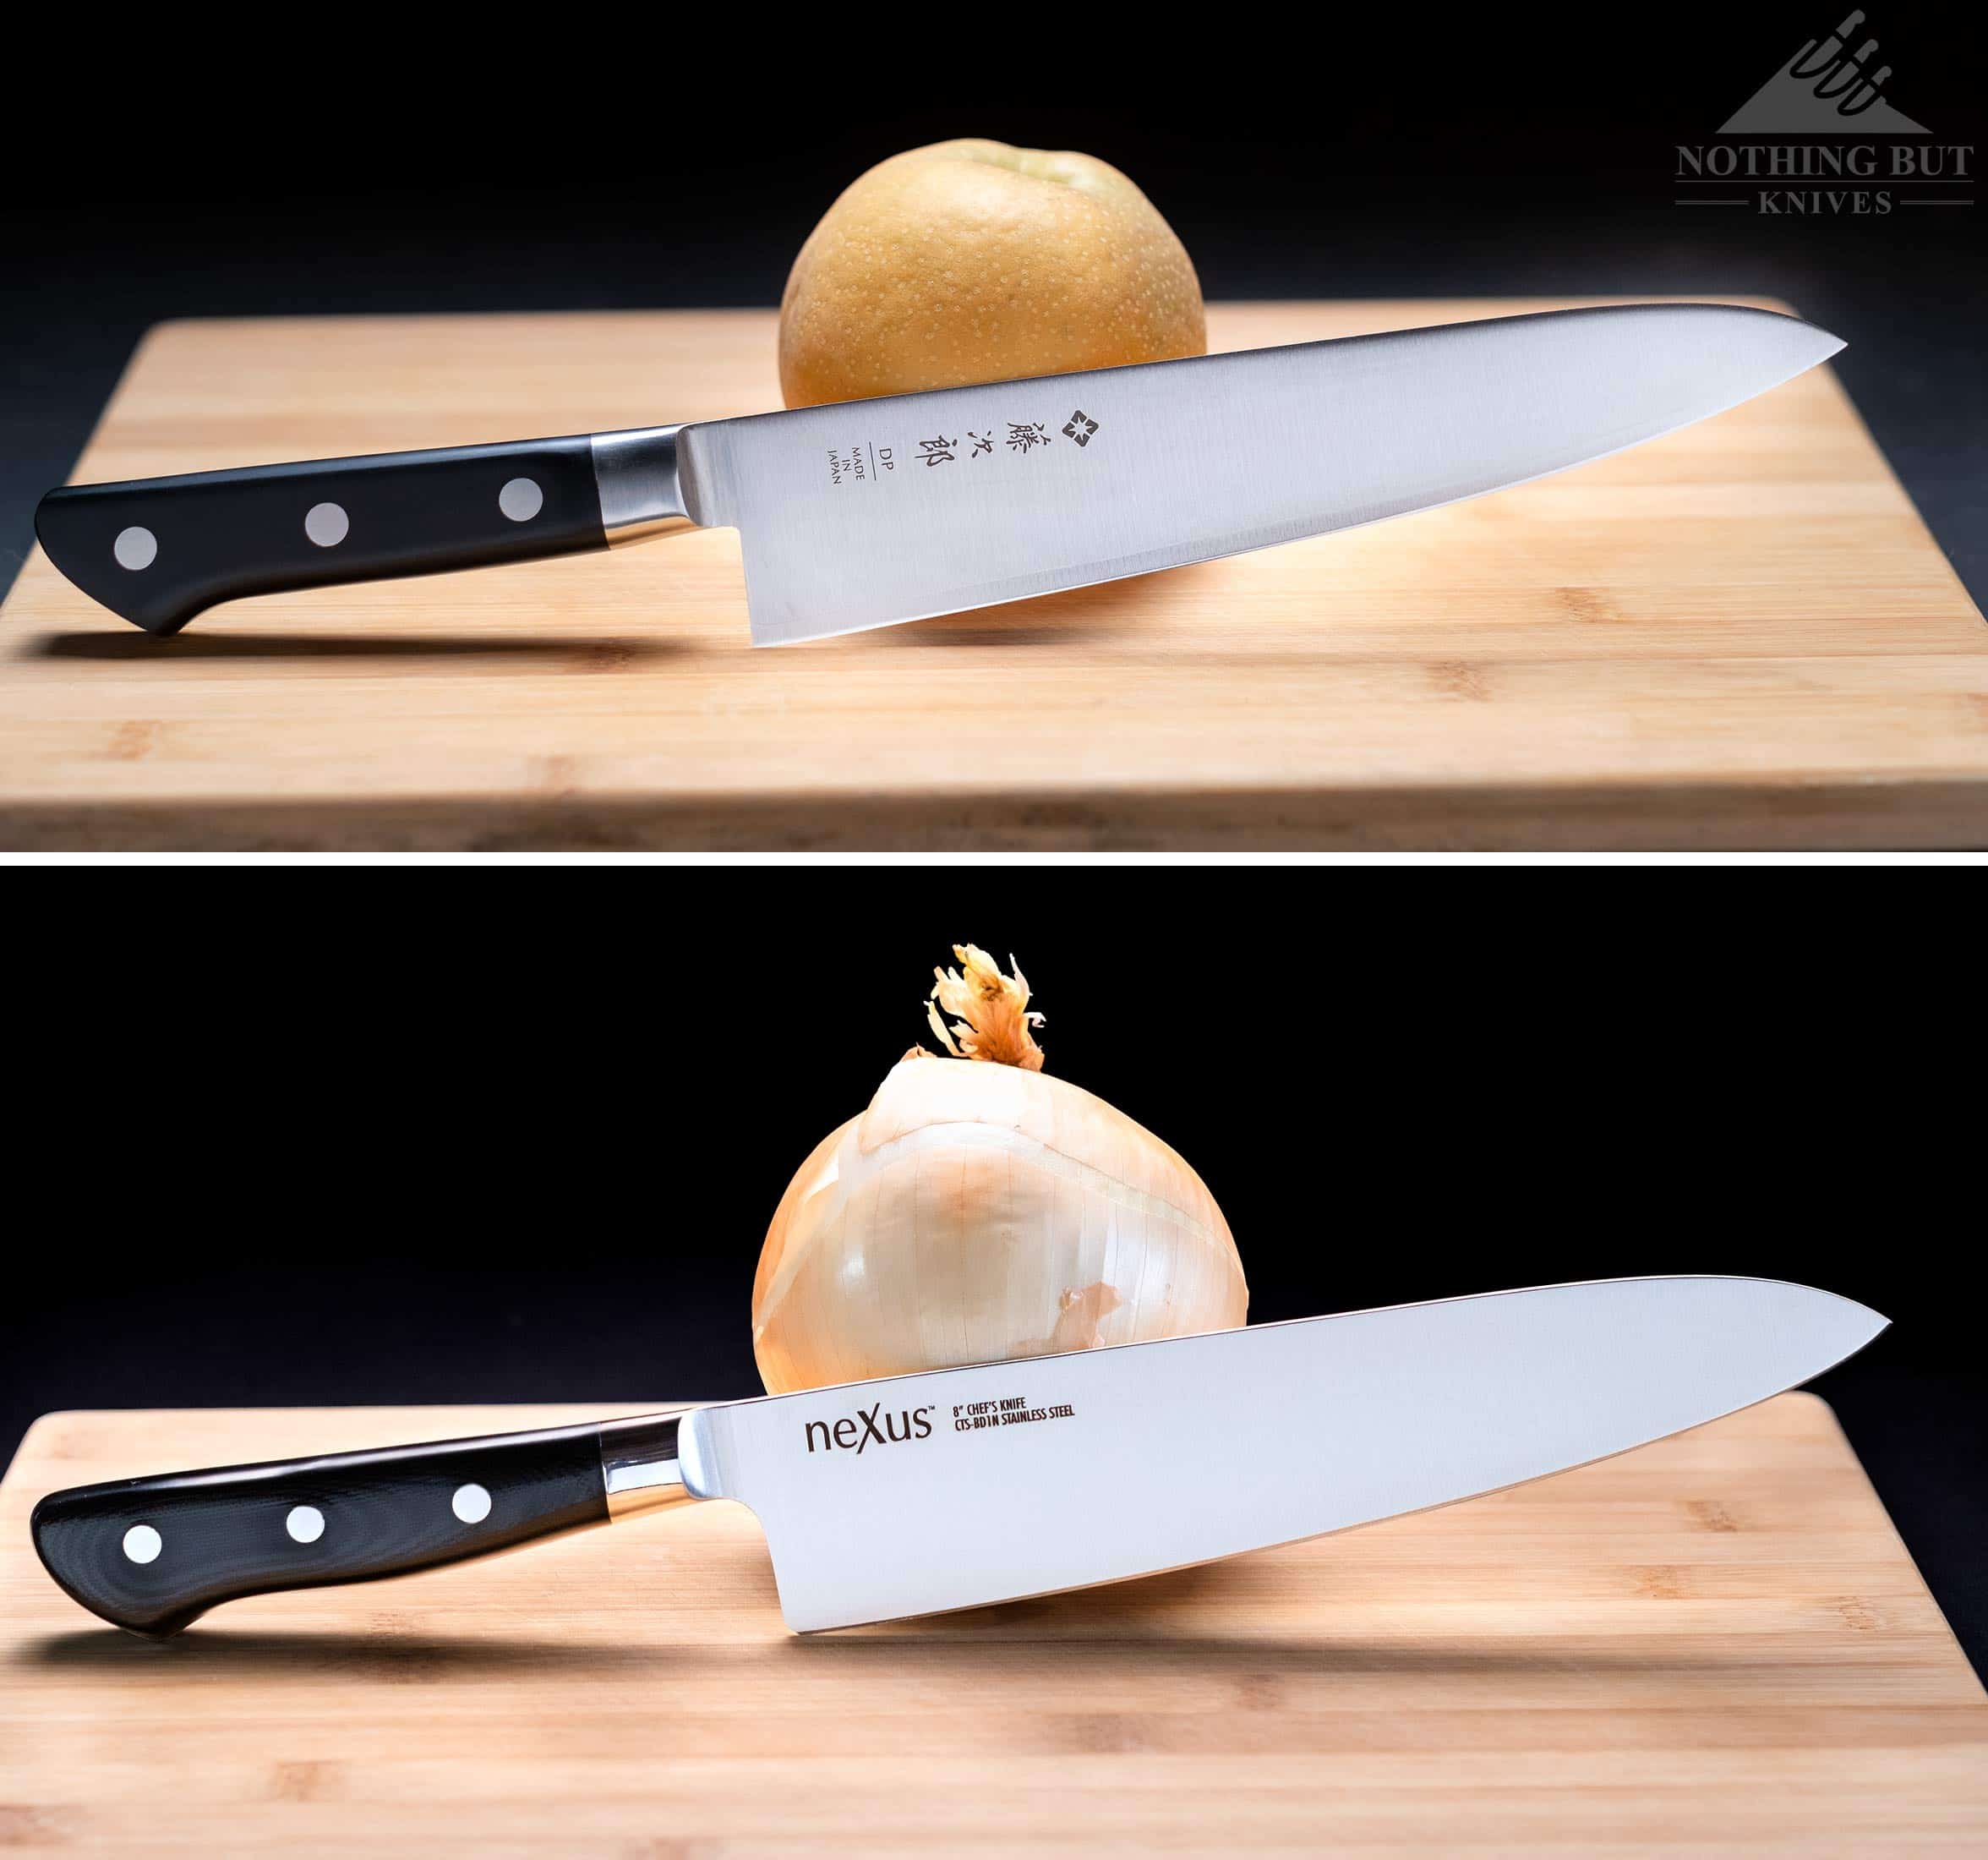 10 inch Chef Knife|Gunter Wilhelm